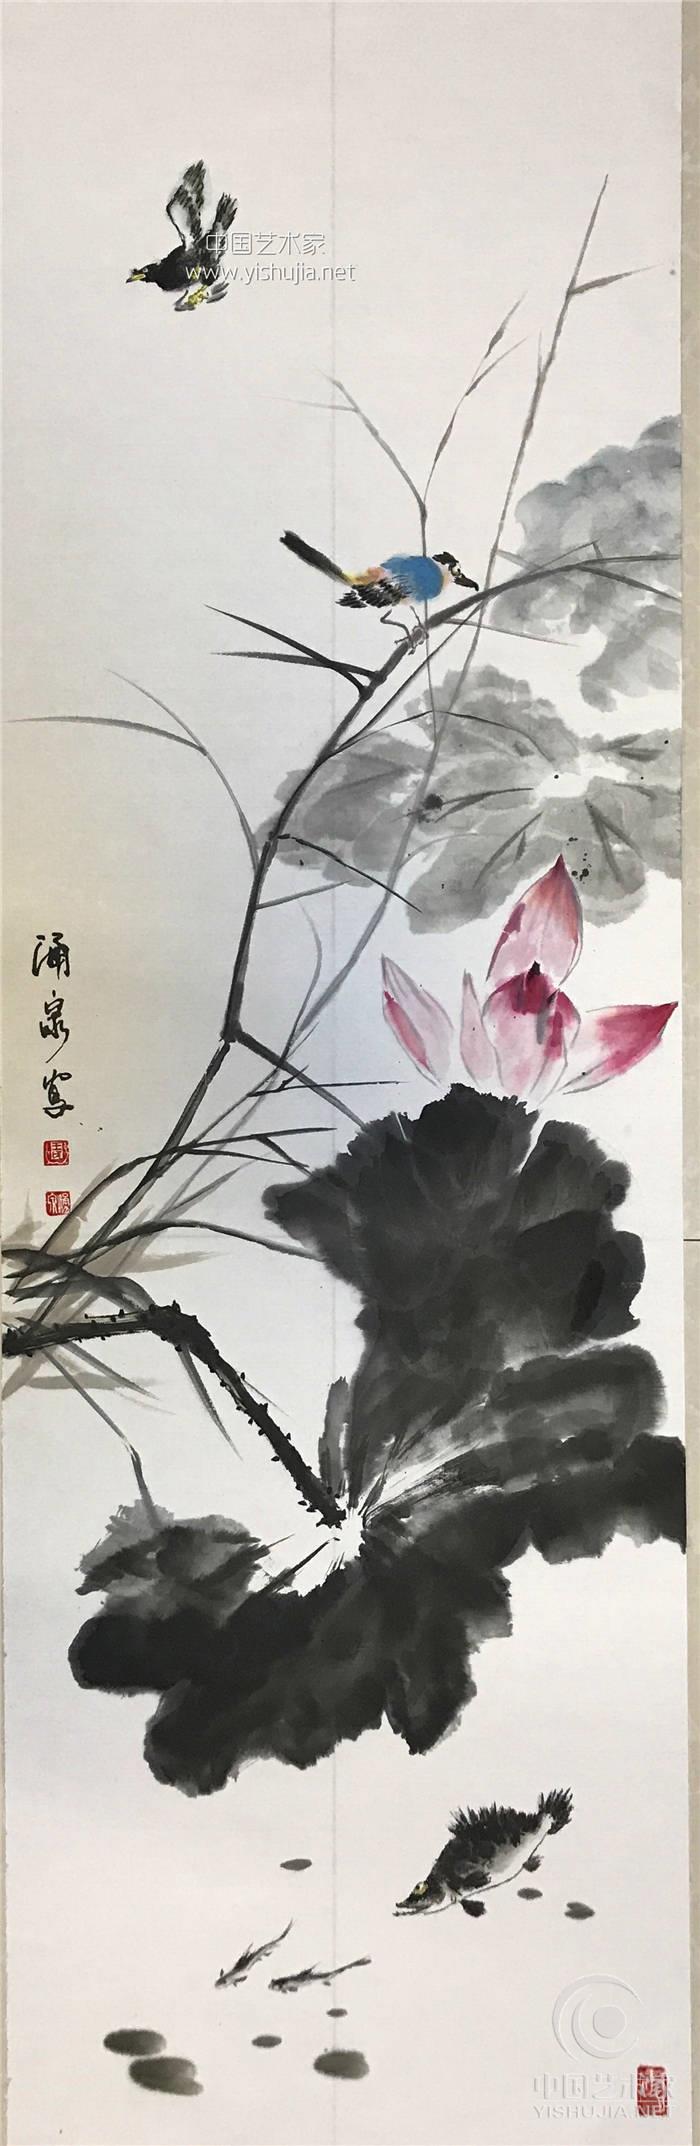 国家一级美术师 当代著名国画家王涌泉“中国画当今浅评”